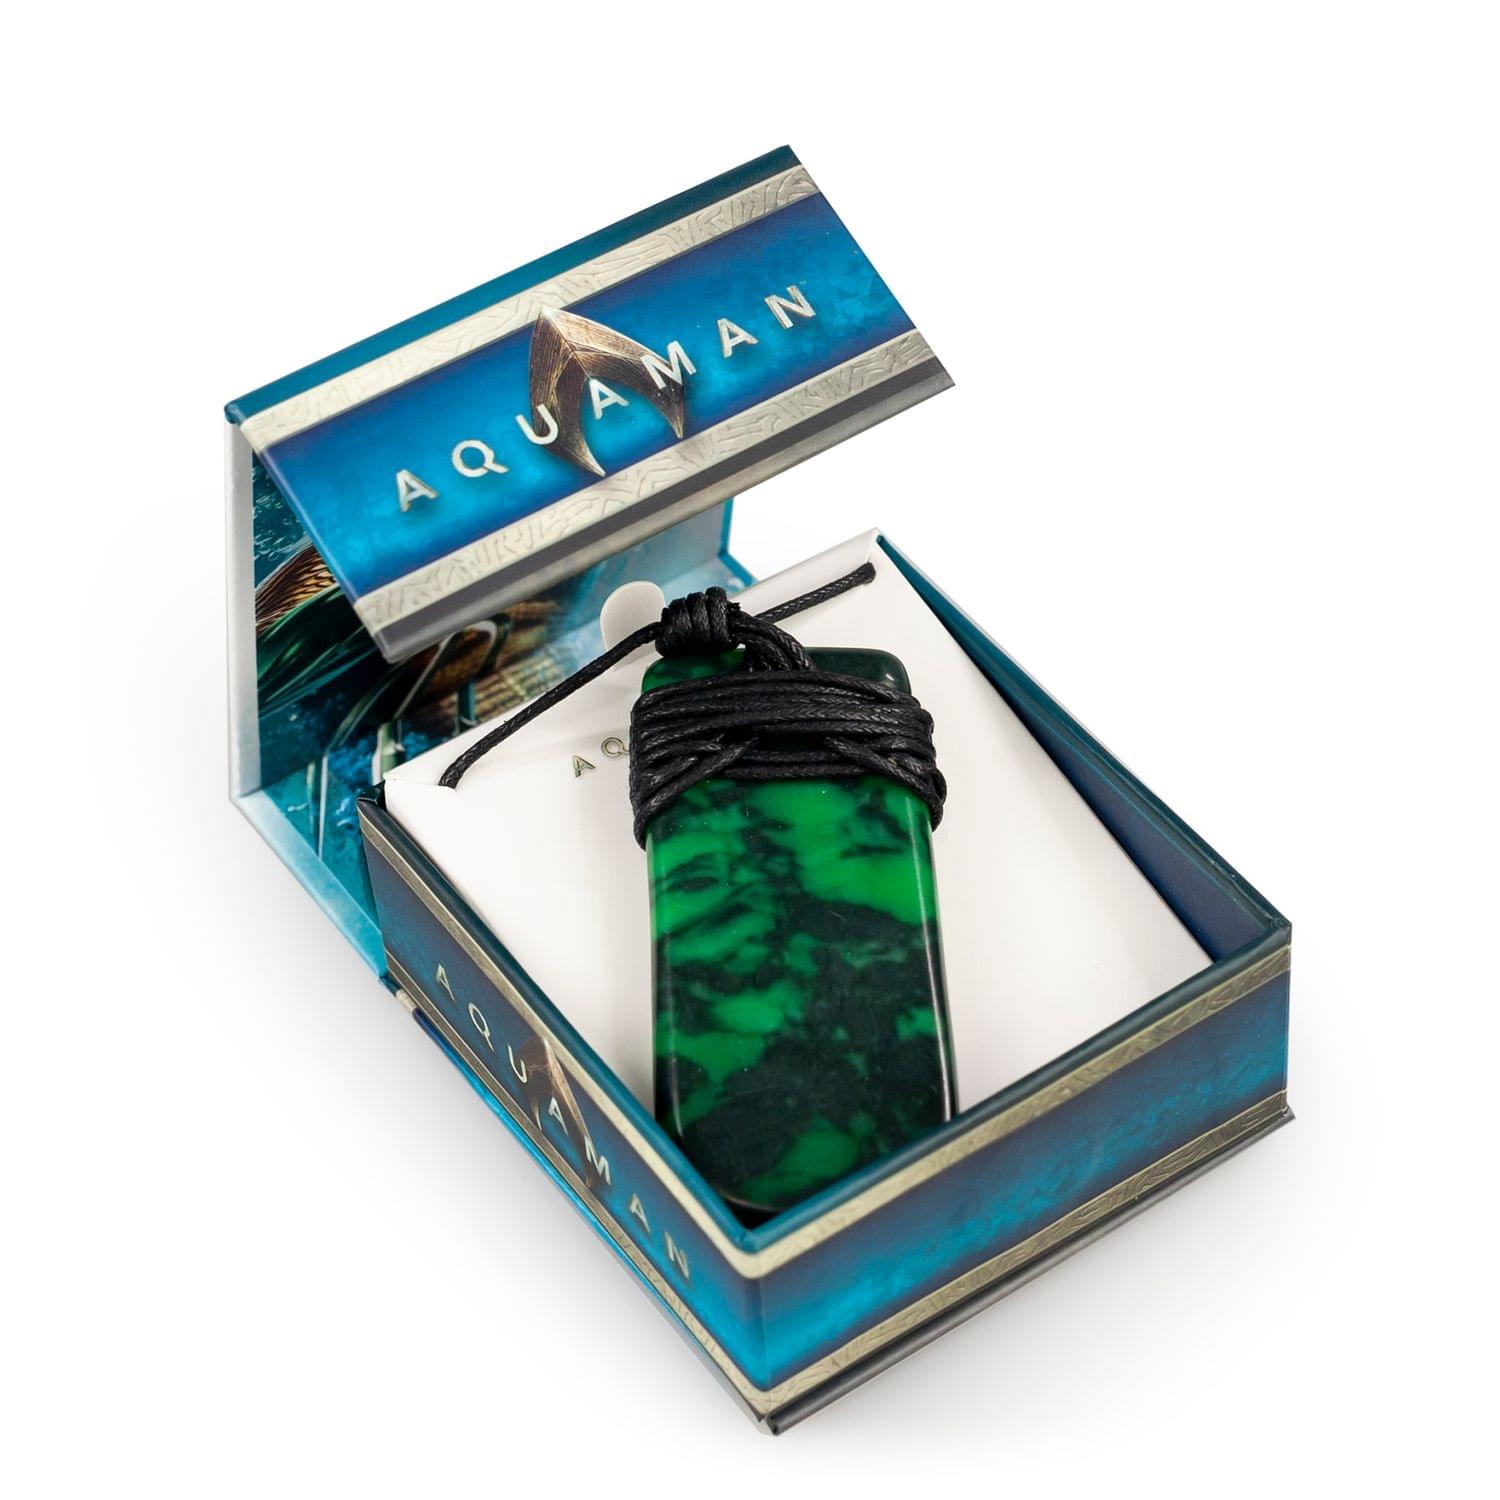 Aquaman Collectibles | Aquaman Movie Maori Toki Pendant | Replica 24 Inch Necklace